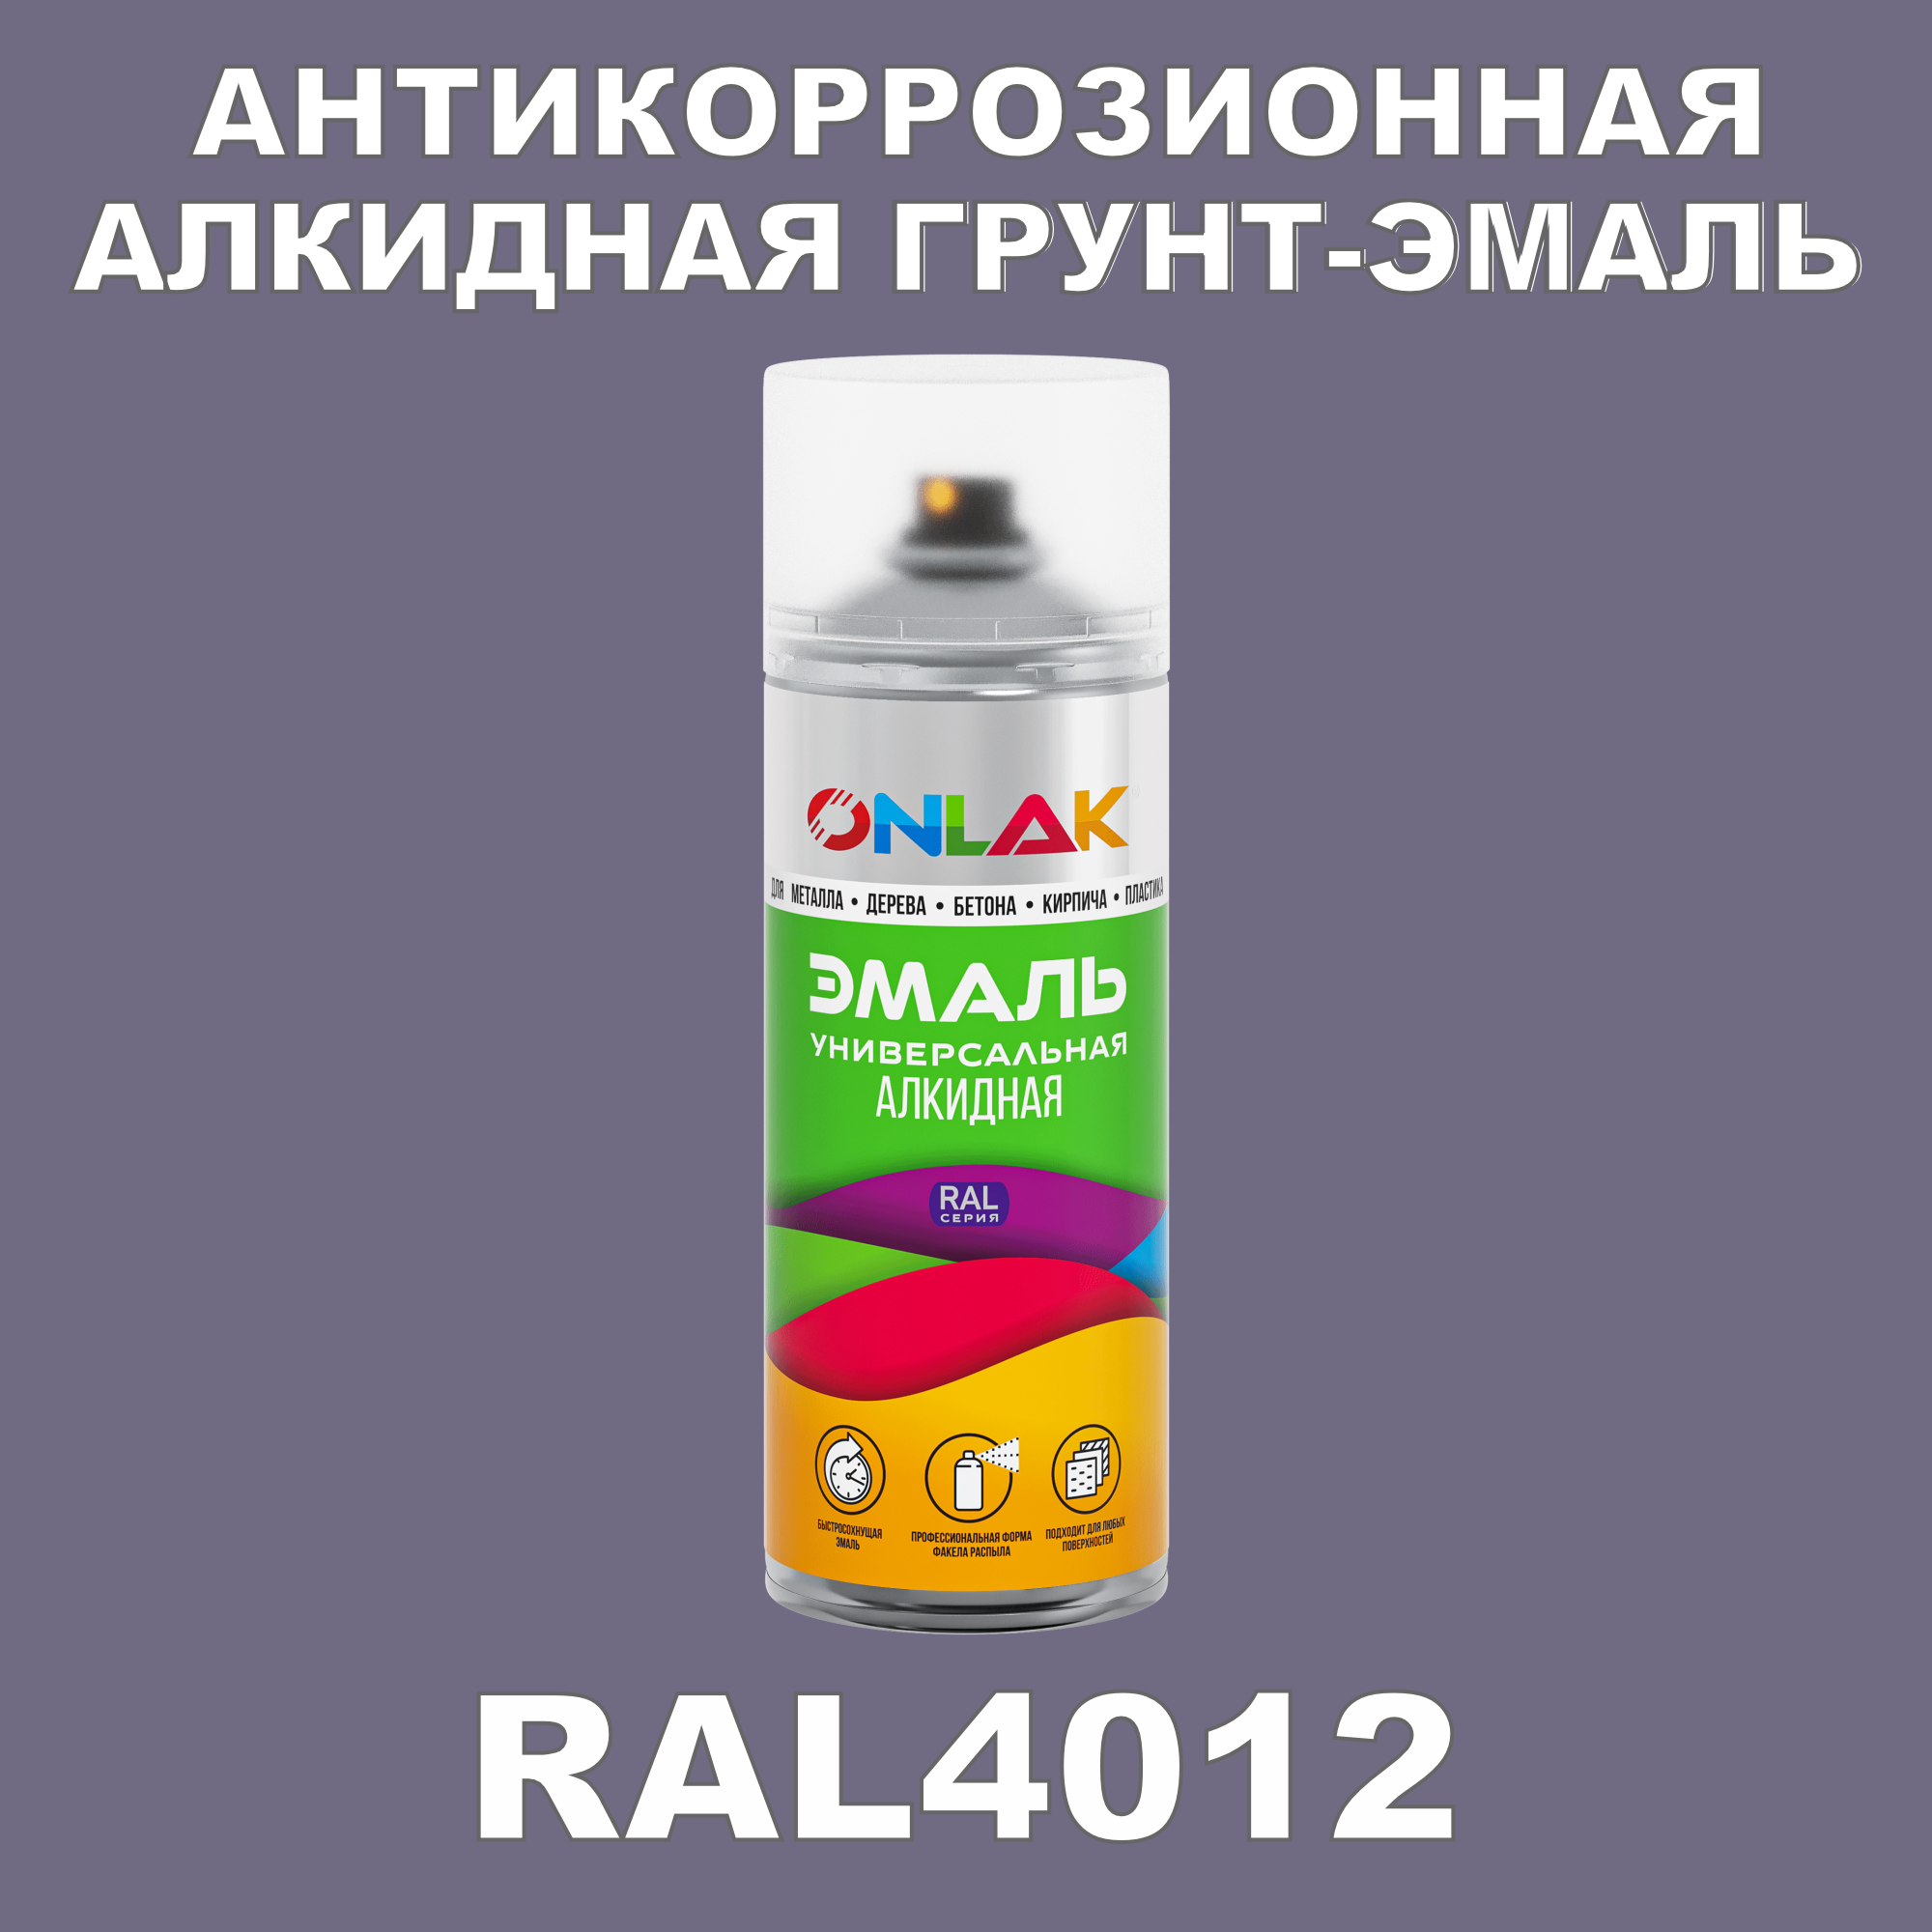 Антикоррозионная грунт-эмаль ONLAK RAL 4012,фиолетовый,715 мл artuniq color violet ной грунт для аквариума фиолетовый 1 кг